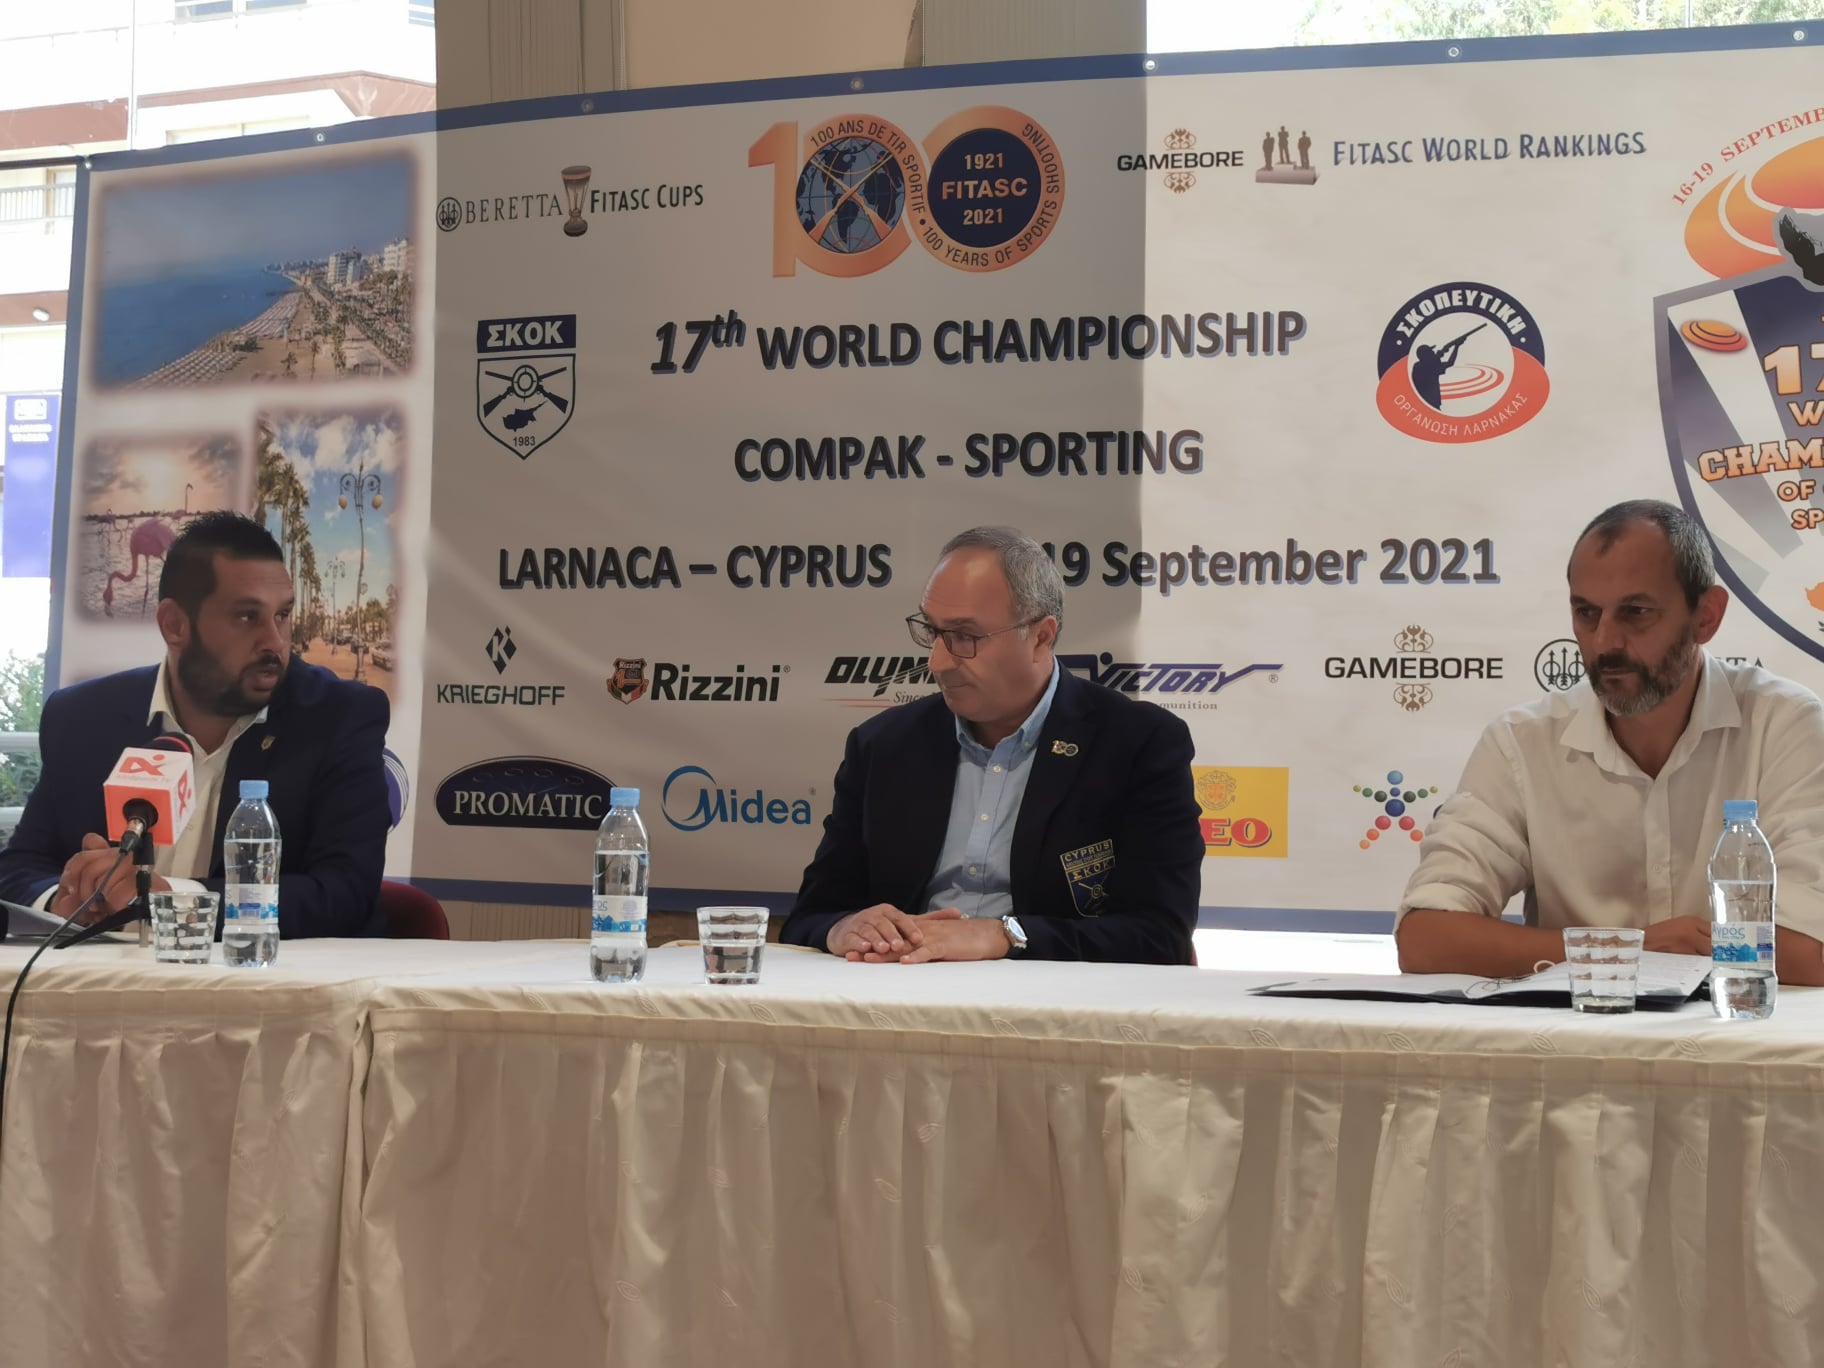 Λάρνακα: 500 αθλητές στην Κύπρο για το 17ο Παγκόσμιο Πρωτάθλημα Κόμπακ Σπόρτιγκ